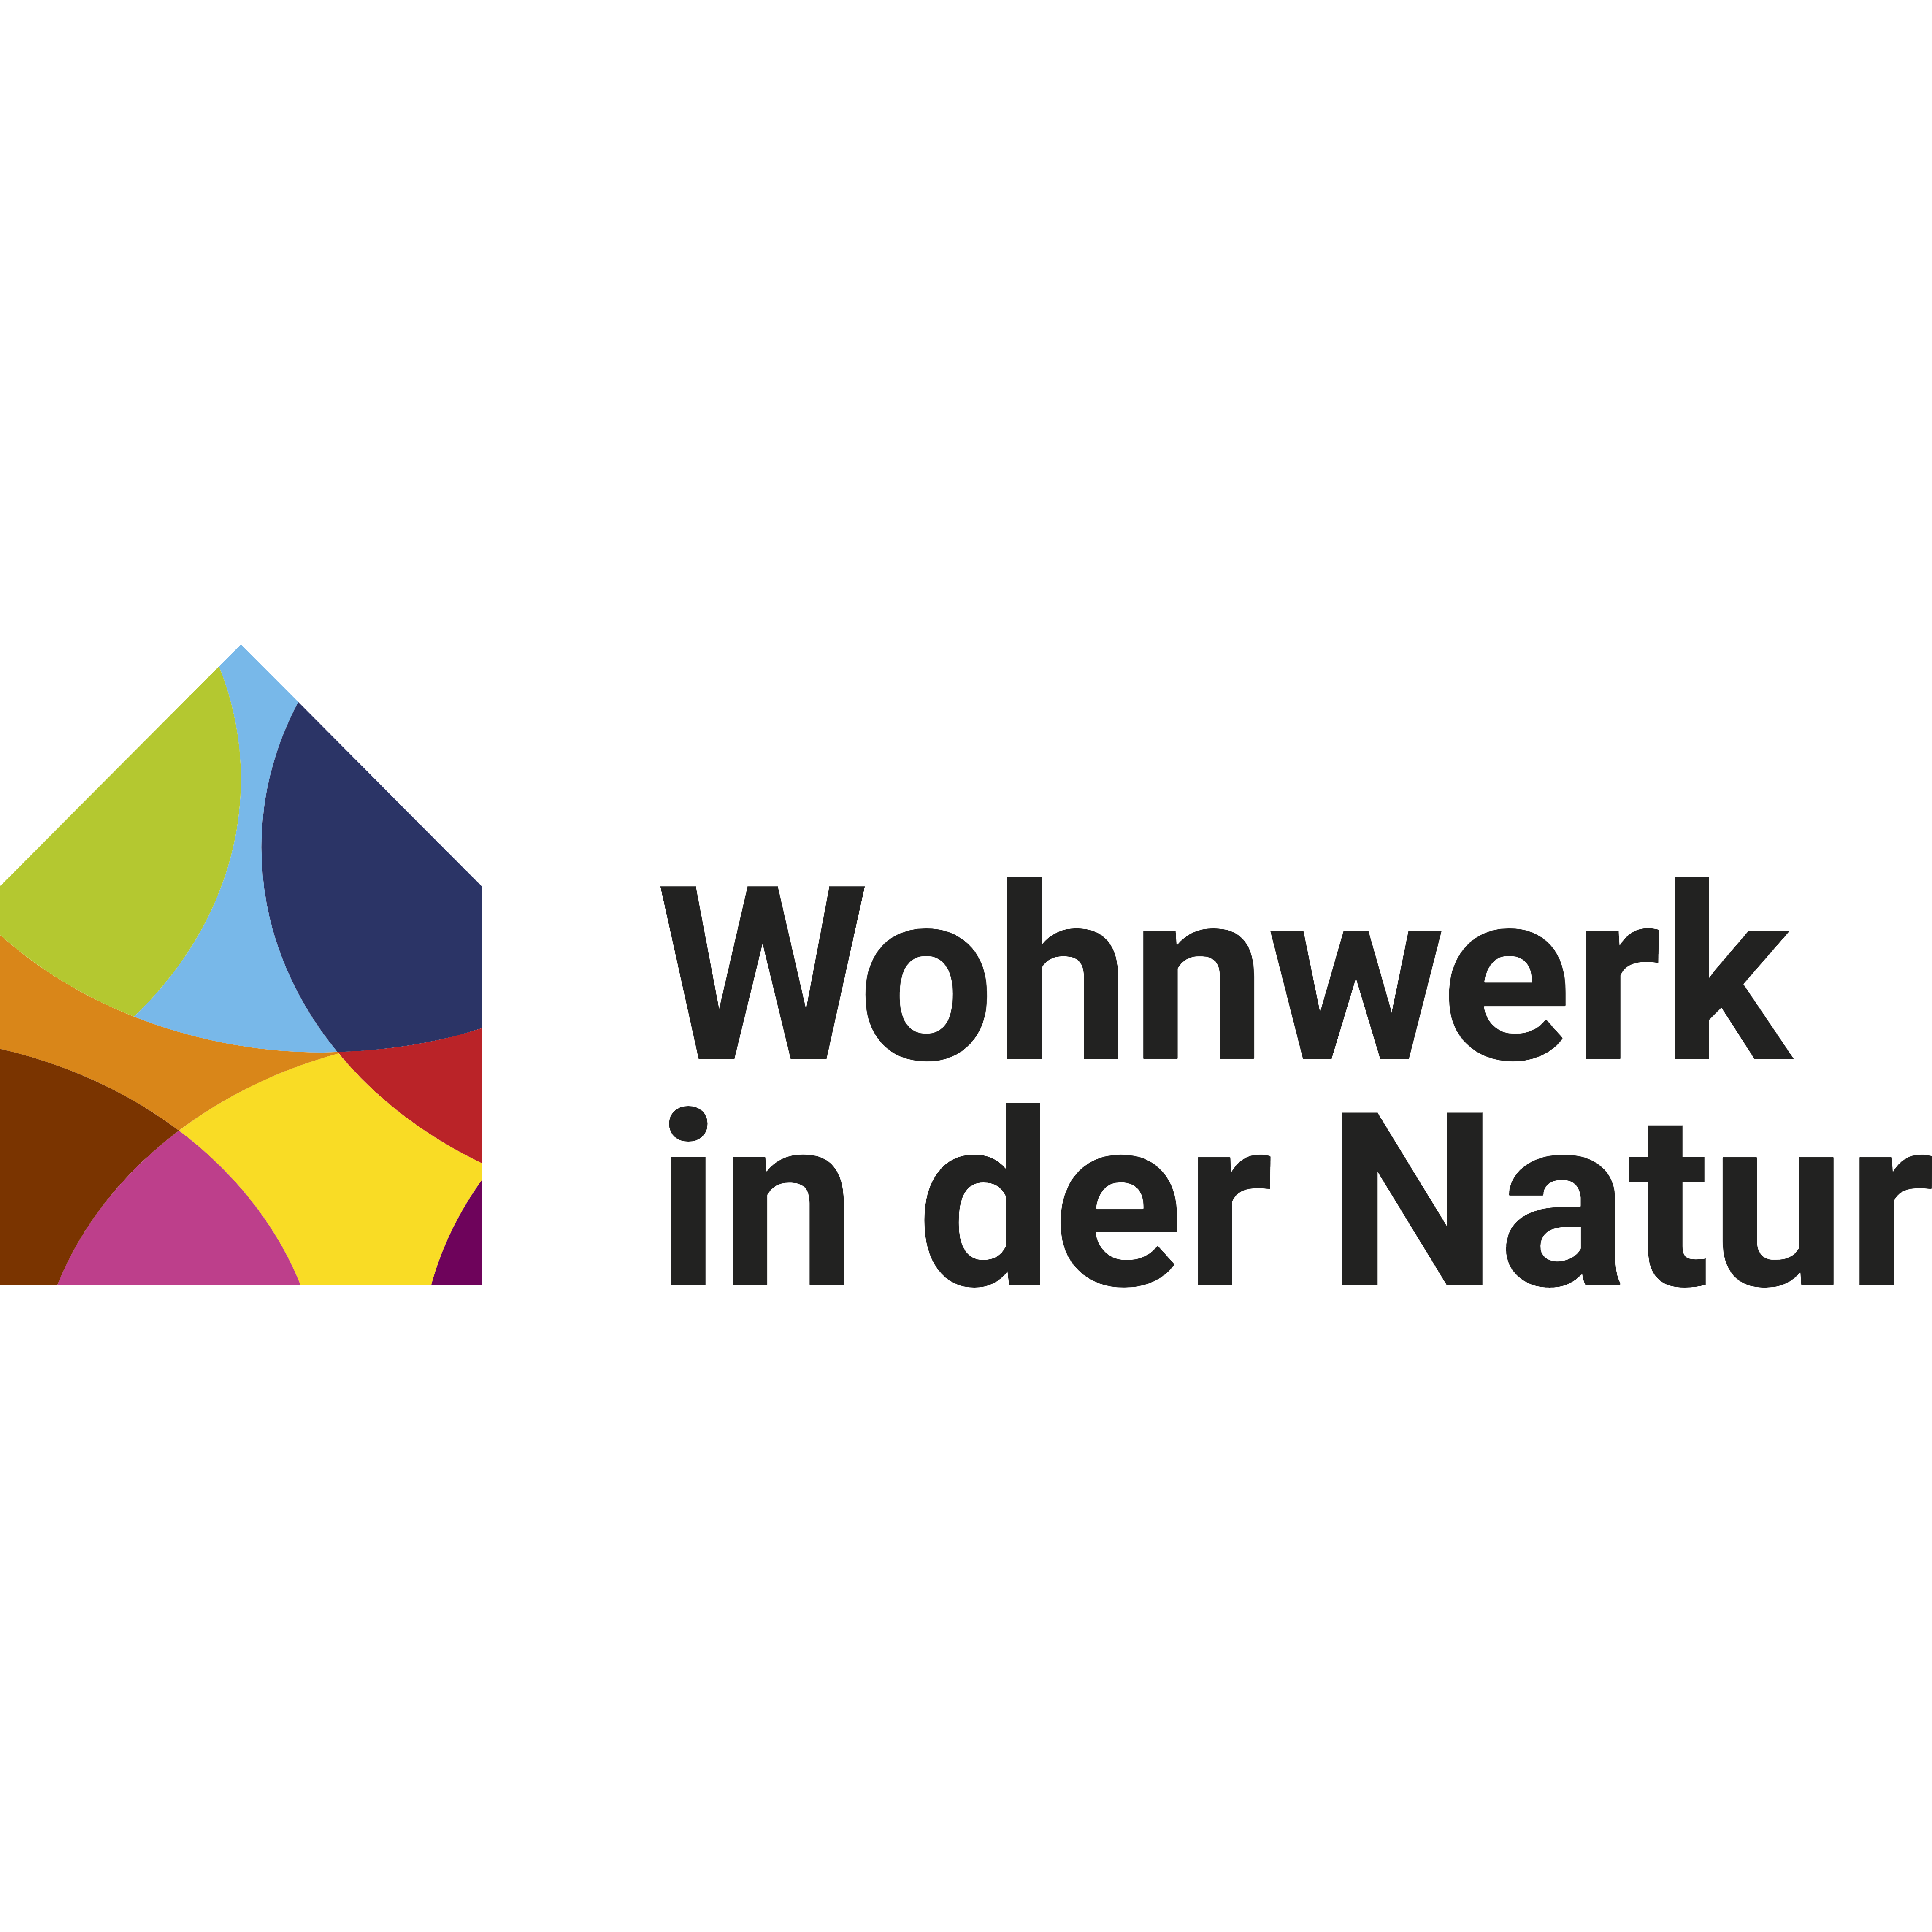 Wohnwerk in der Natur by Rupprich Logo